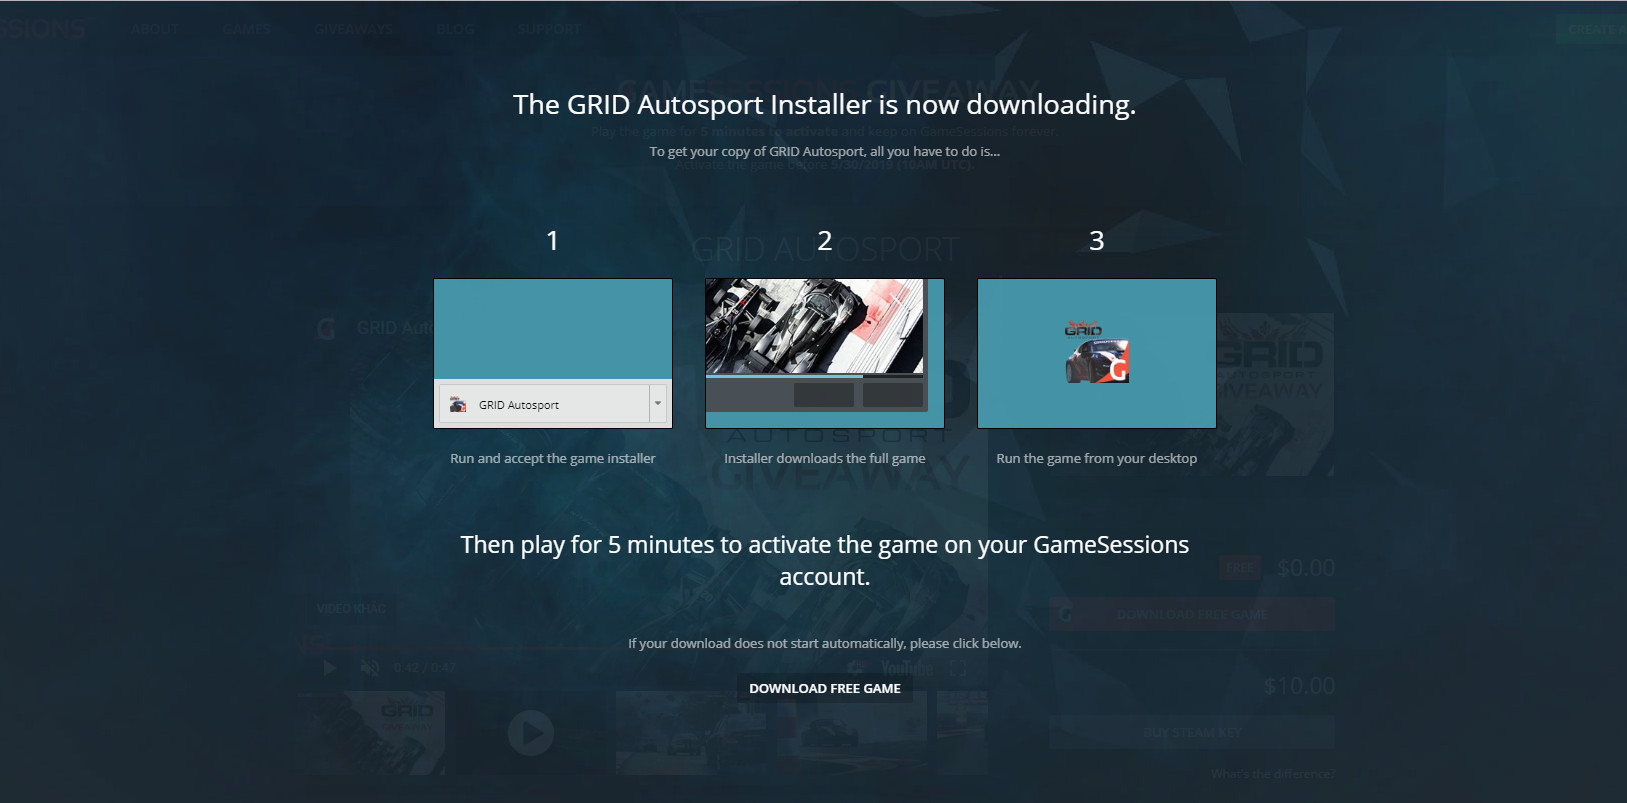 GameSessions đang
miễn phí trong thời gian ngắn tựa game đua xe GRID Autosport
trị giá 39,99$, anh em nhanh tay nhé